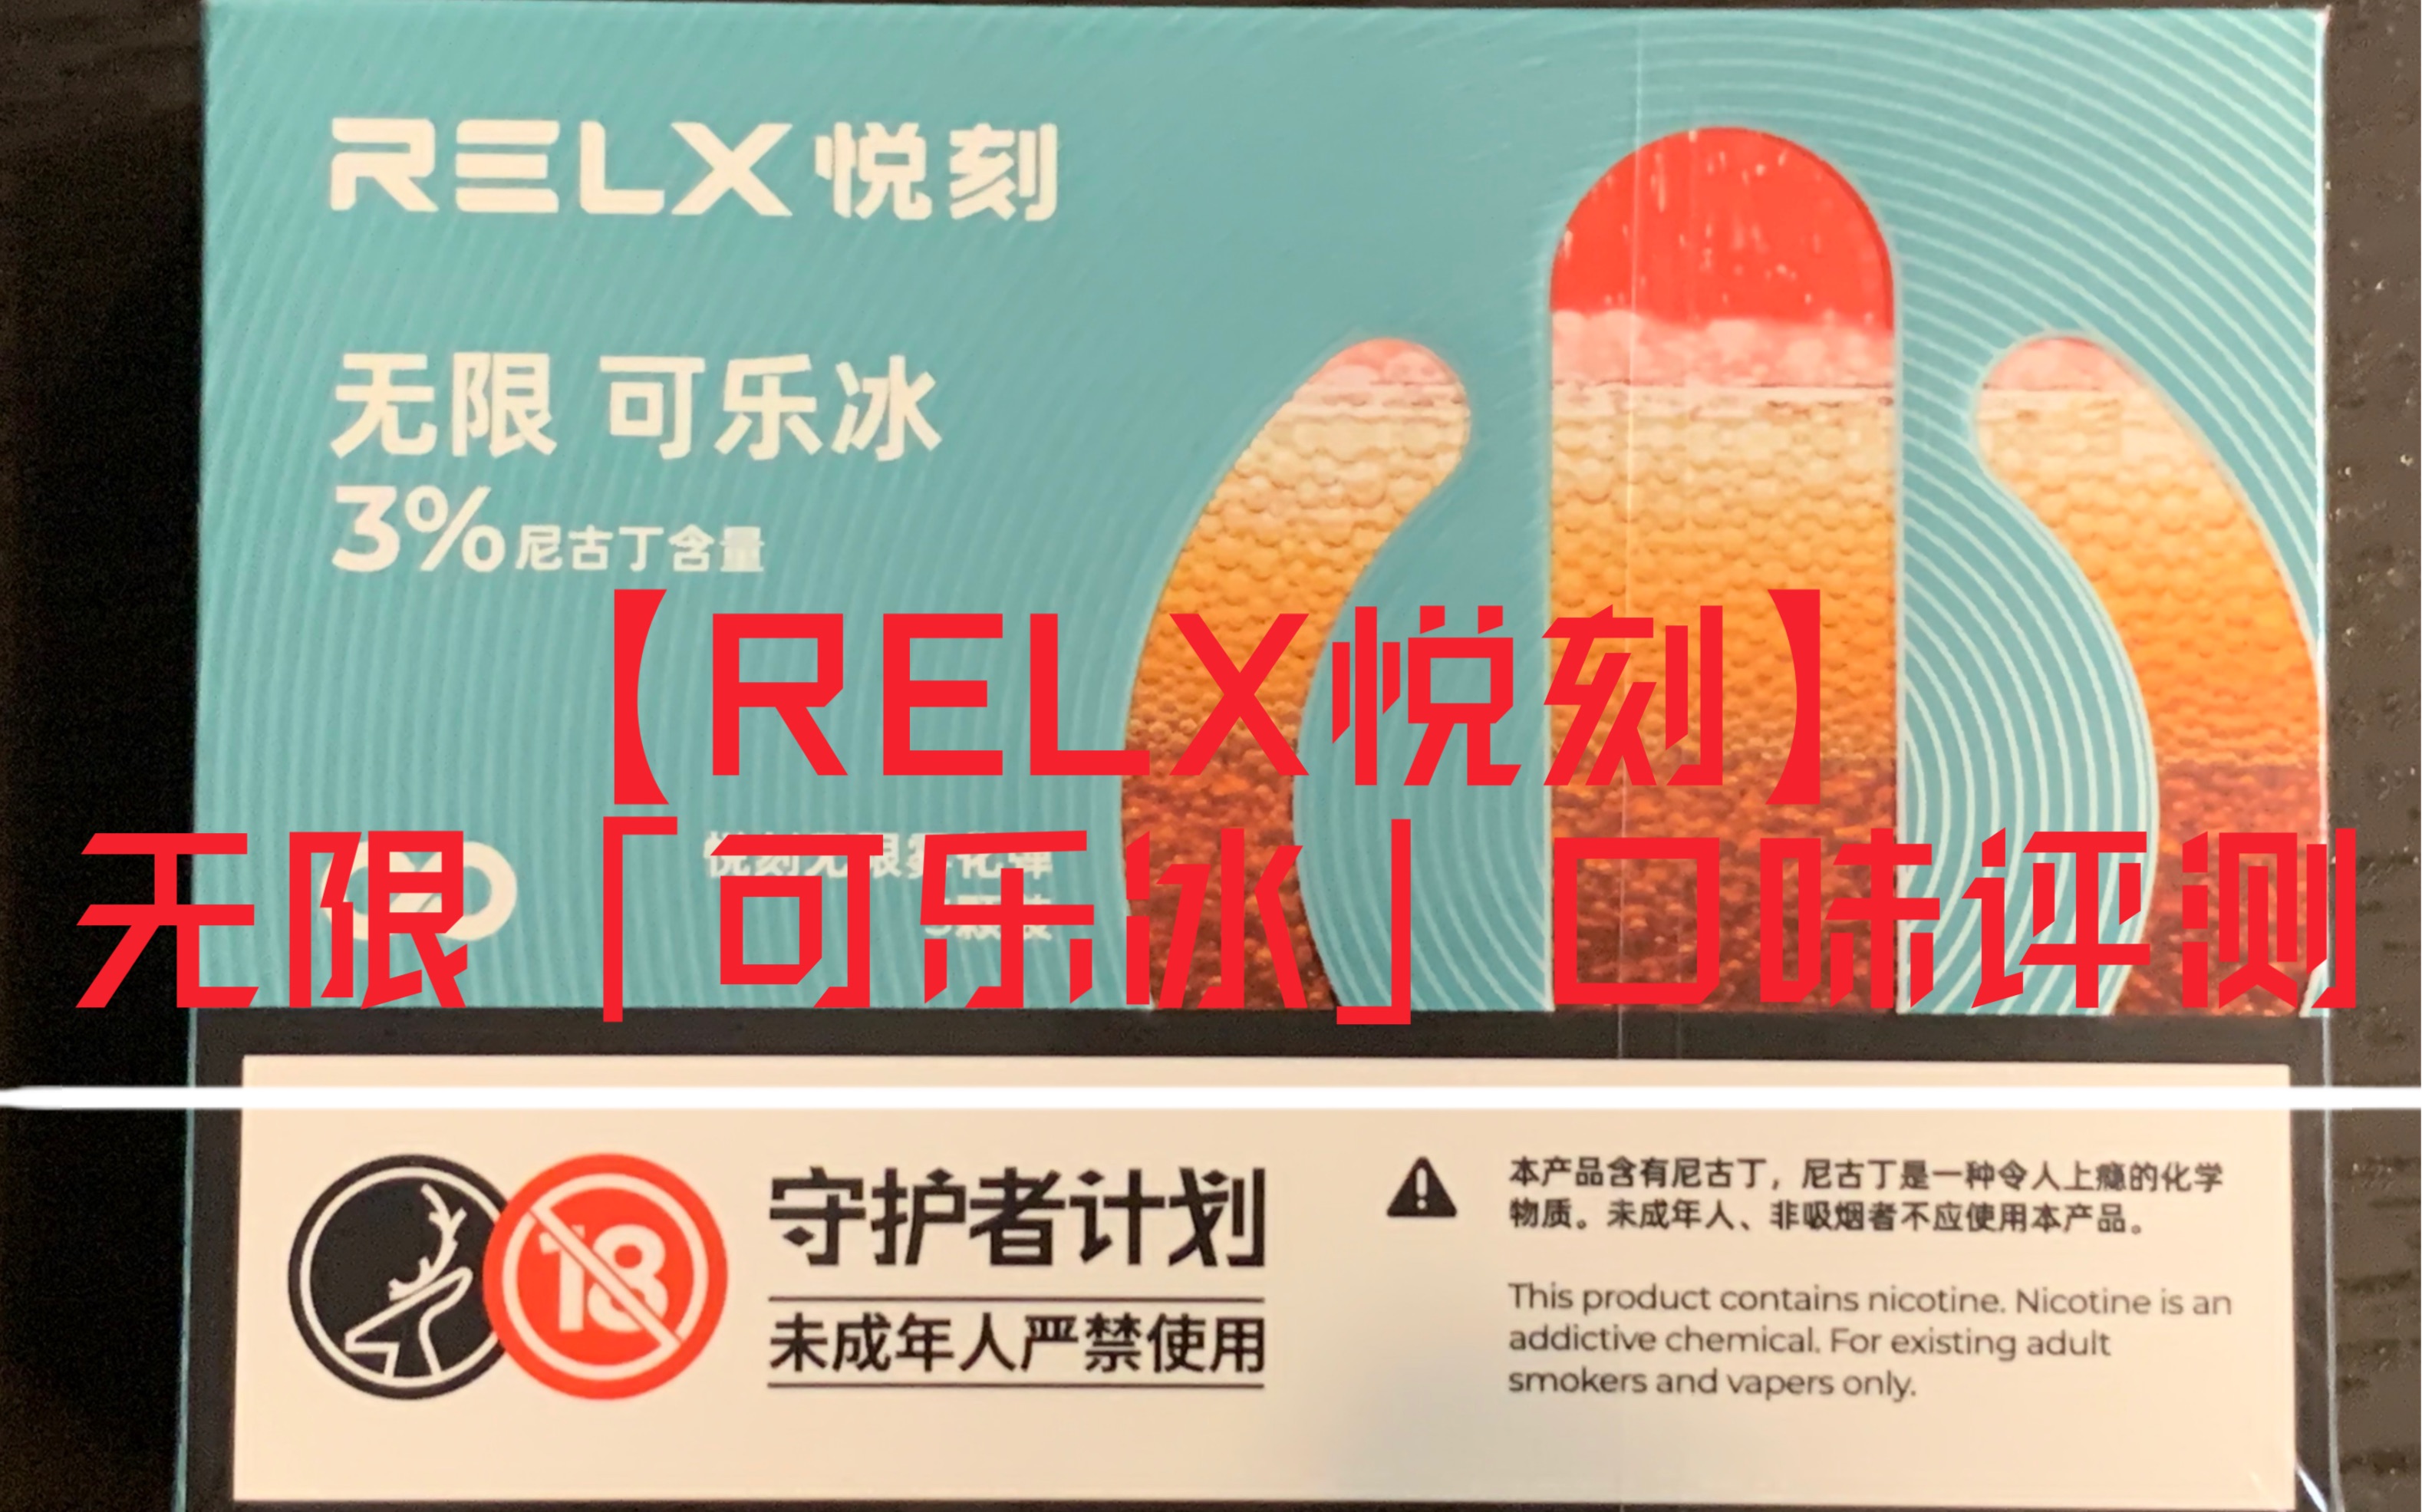 【relx悦刻】悦刻四代无限4代无限「可乐冰」烟弹口味评测